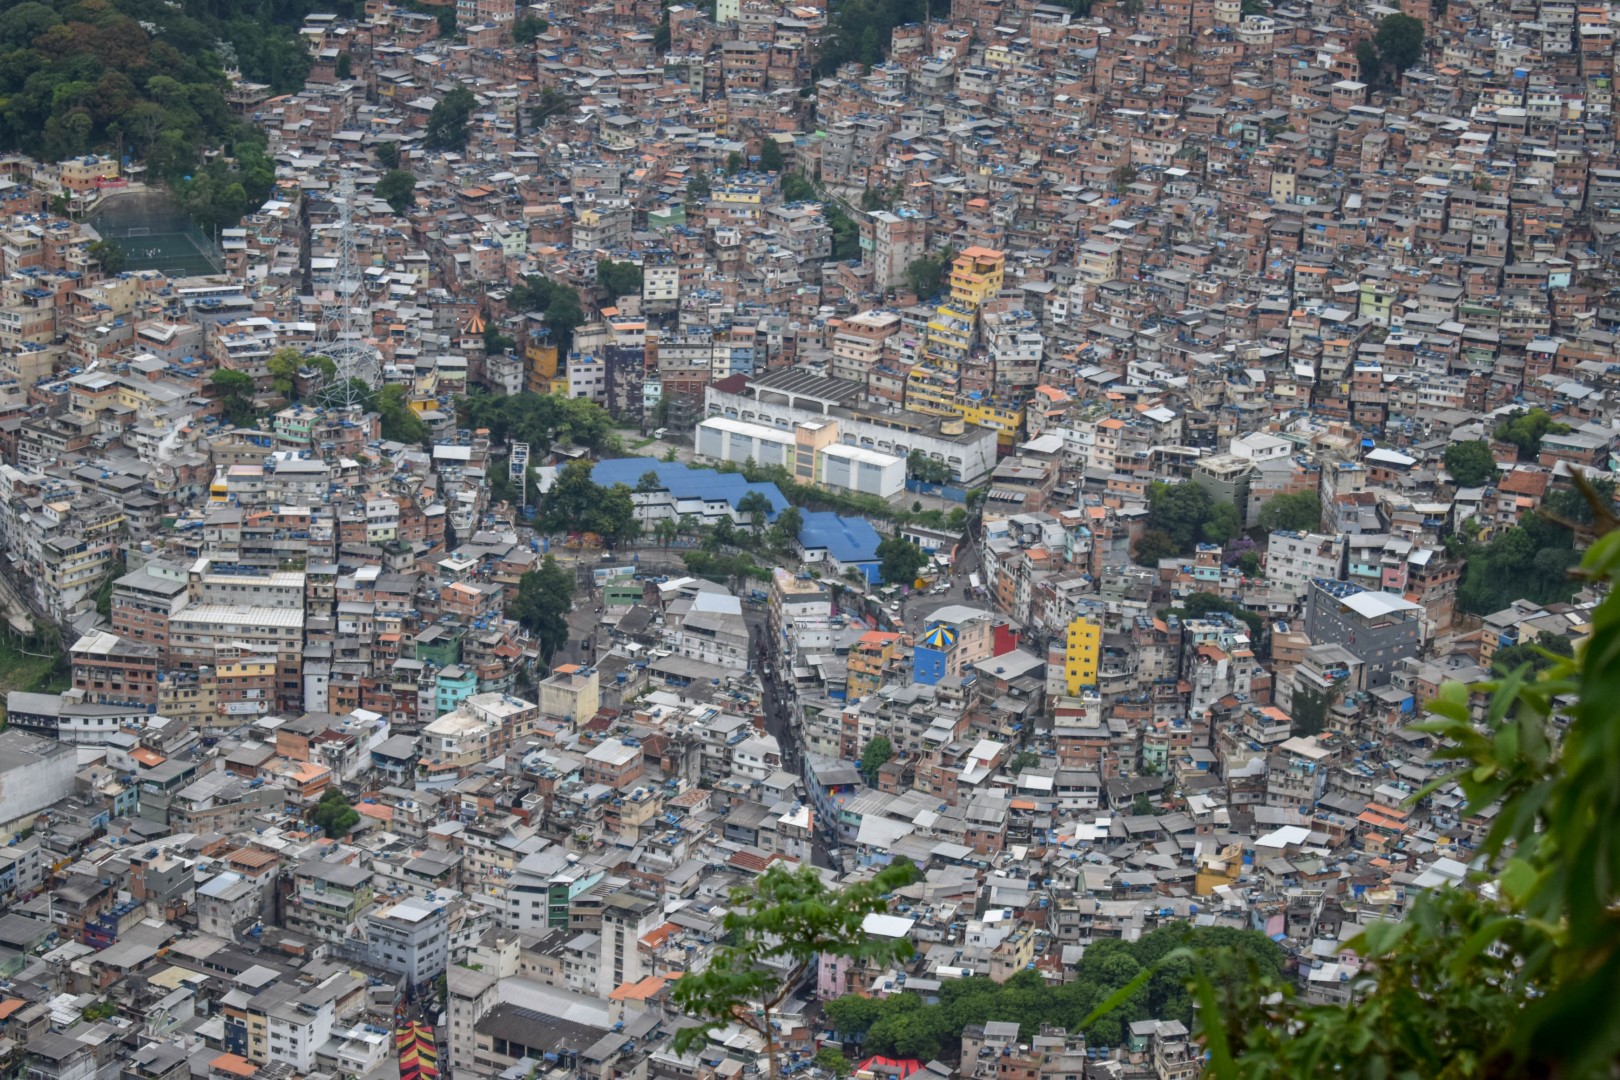 Trilha Morro Dois Irmãos. Rocinha favela